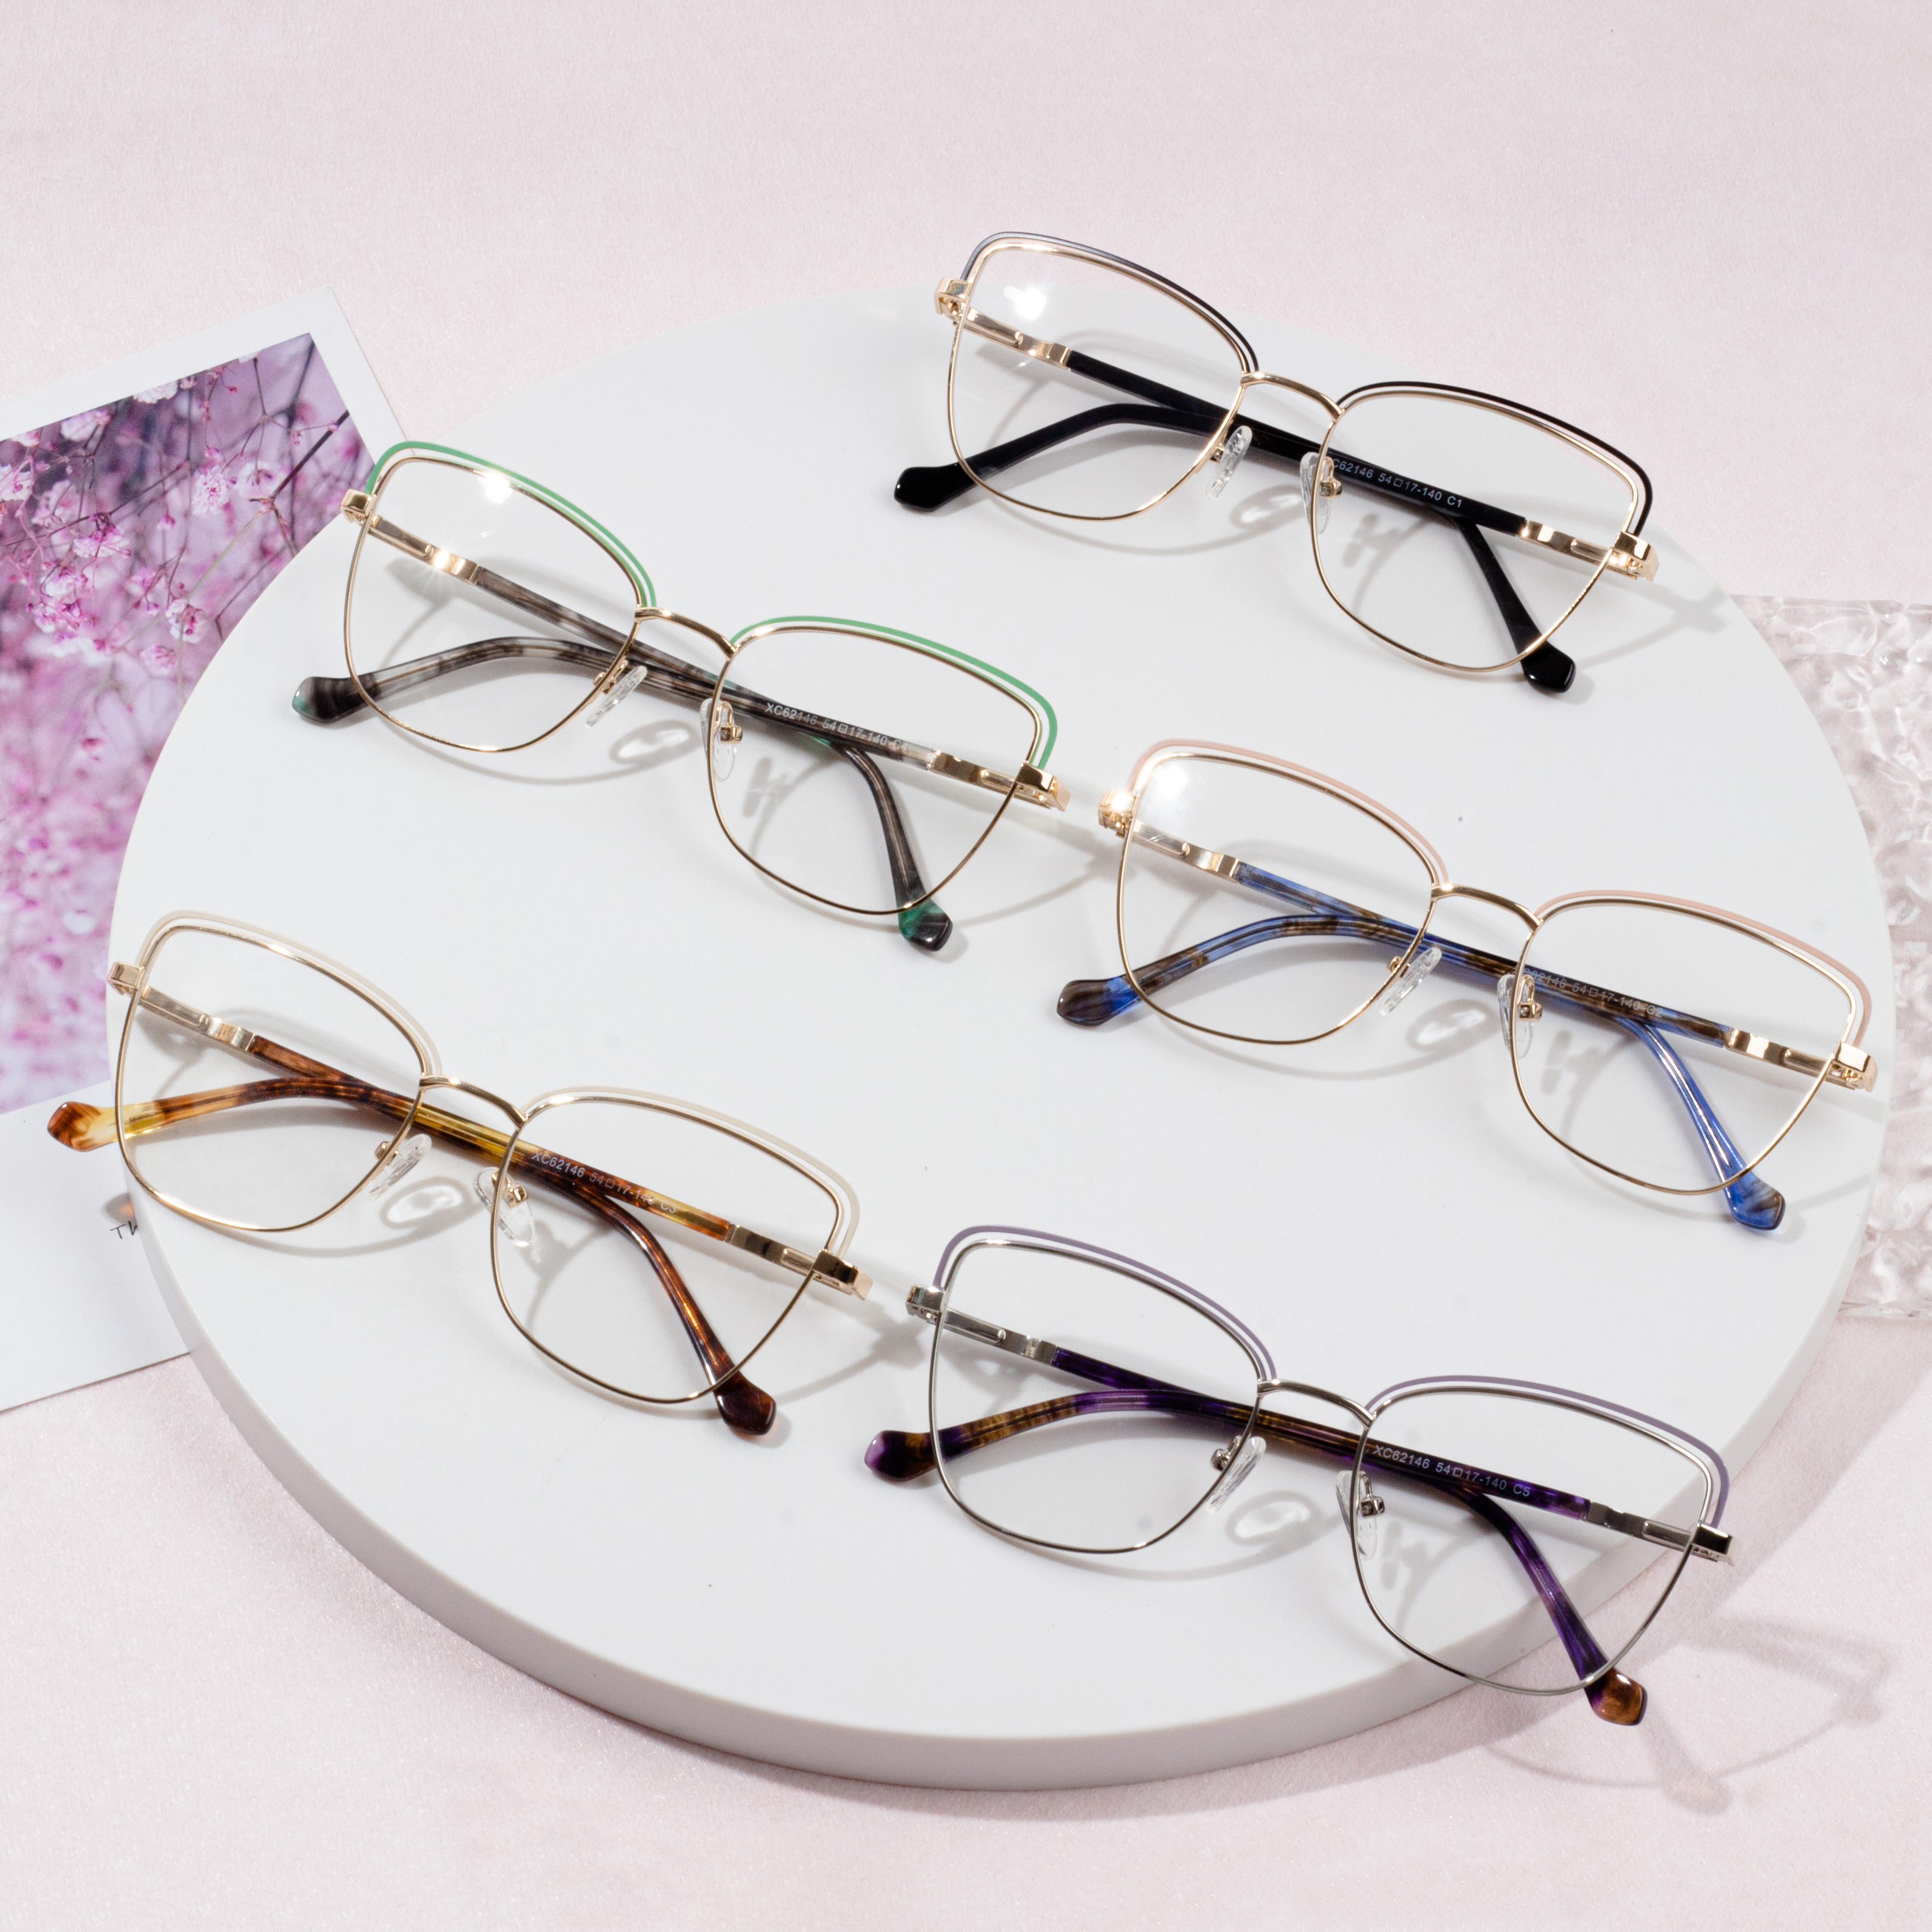 Brillengestelle auswählen